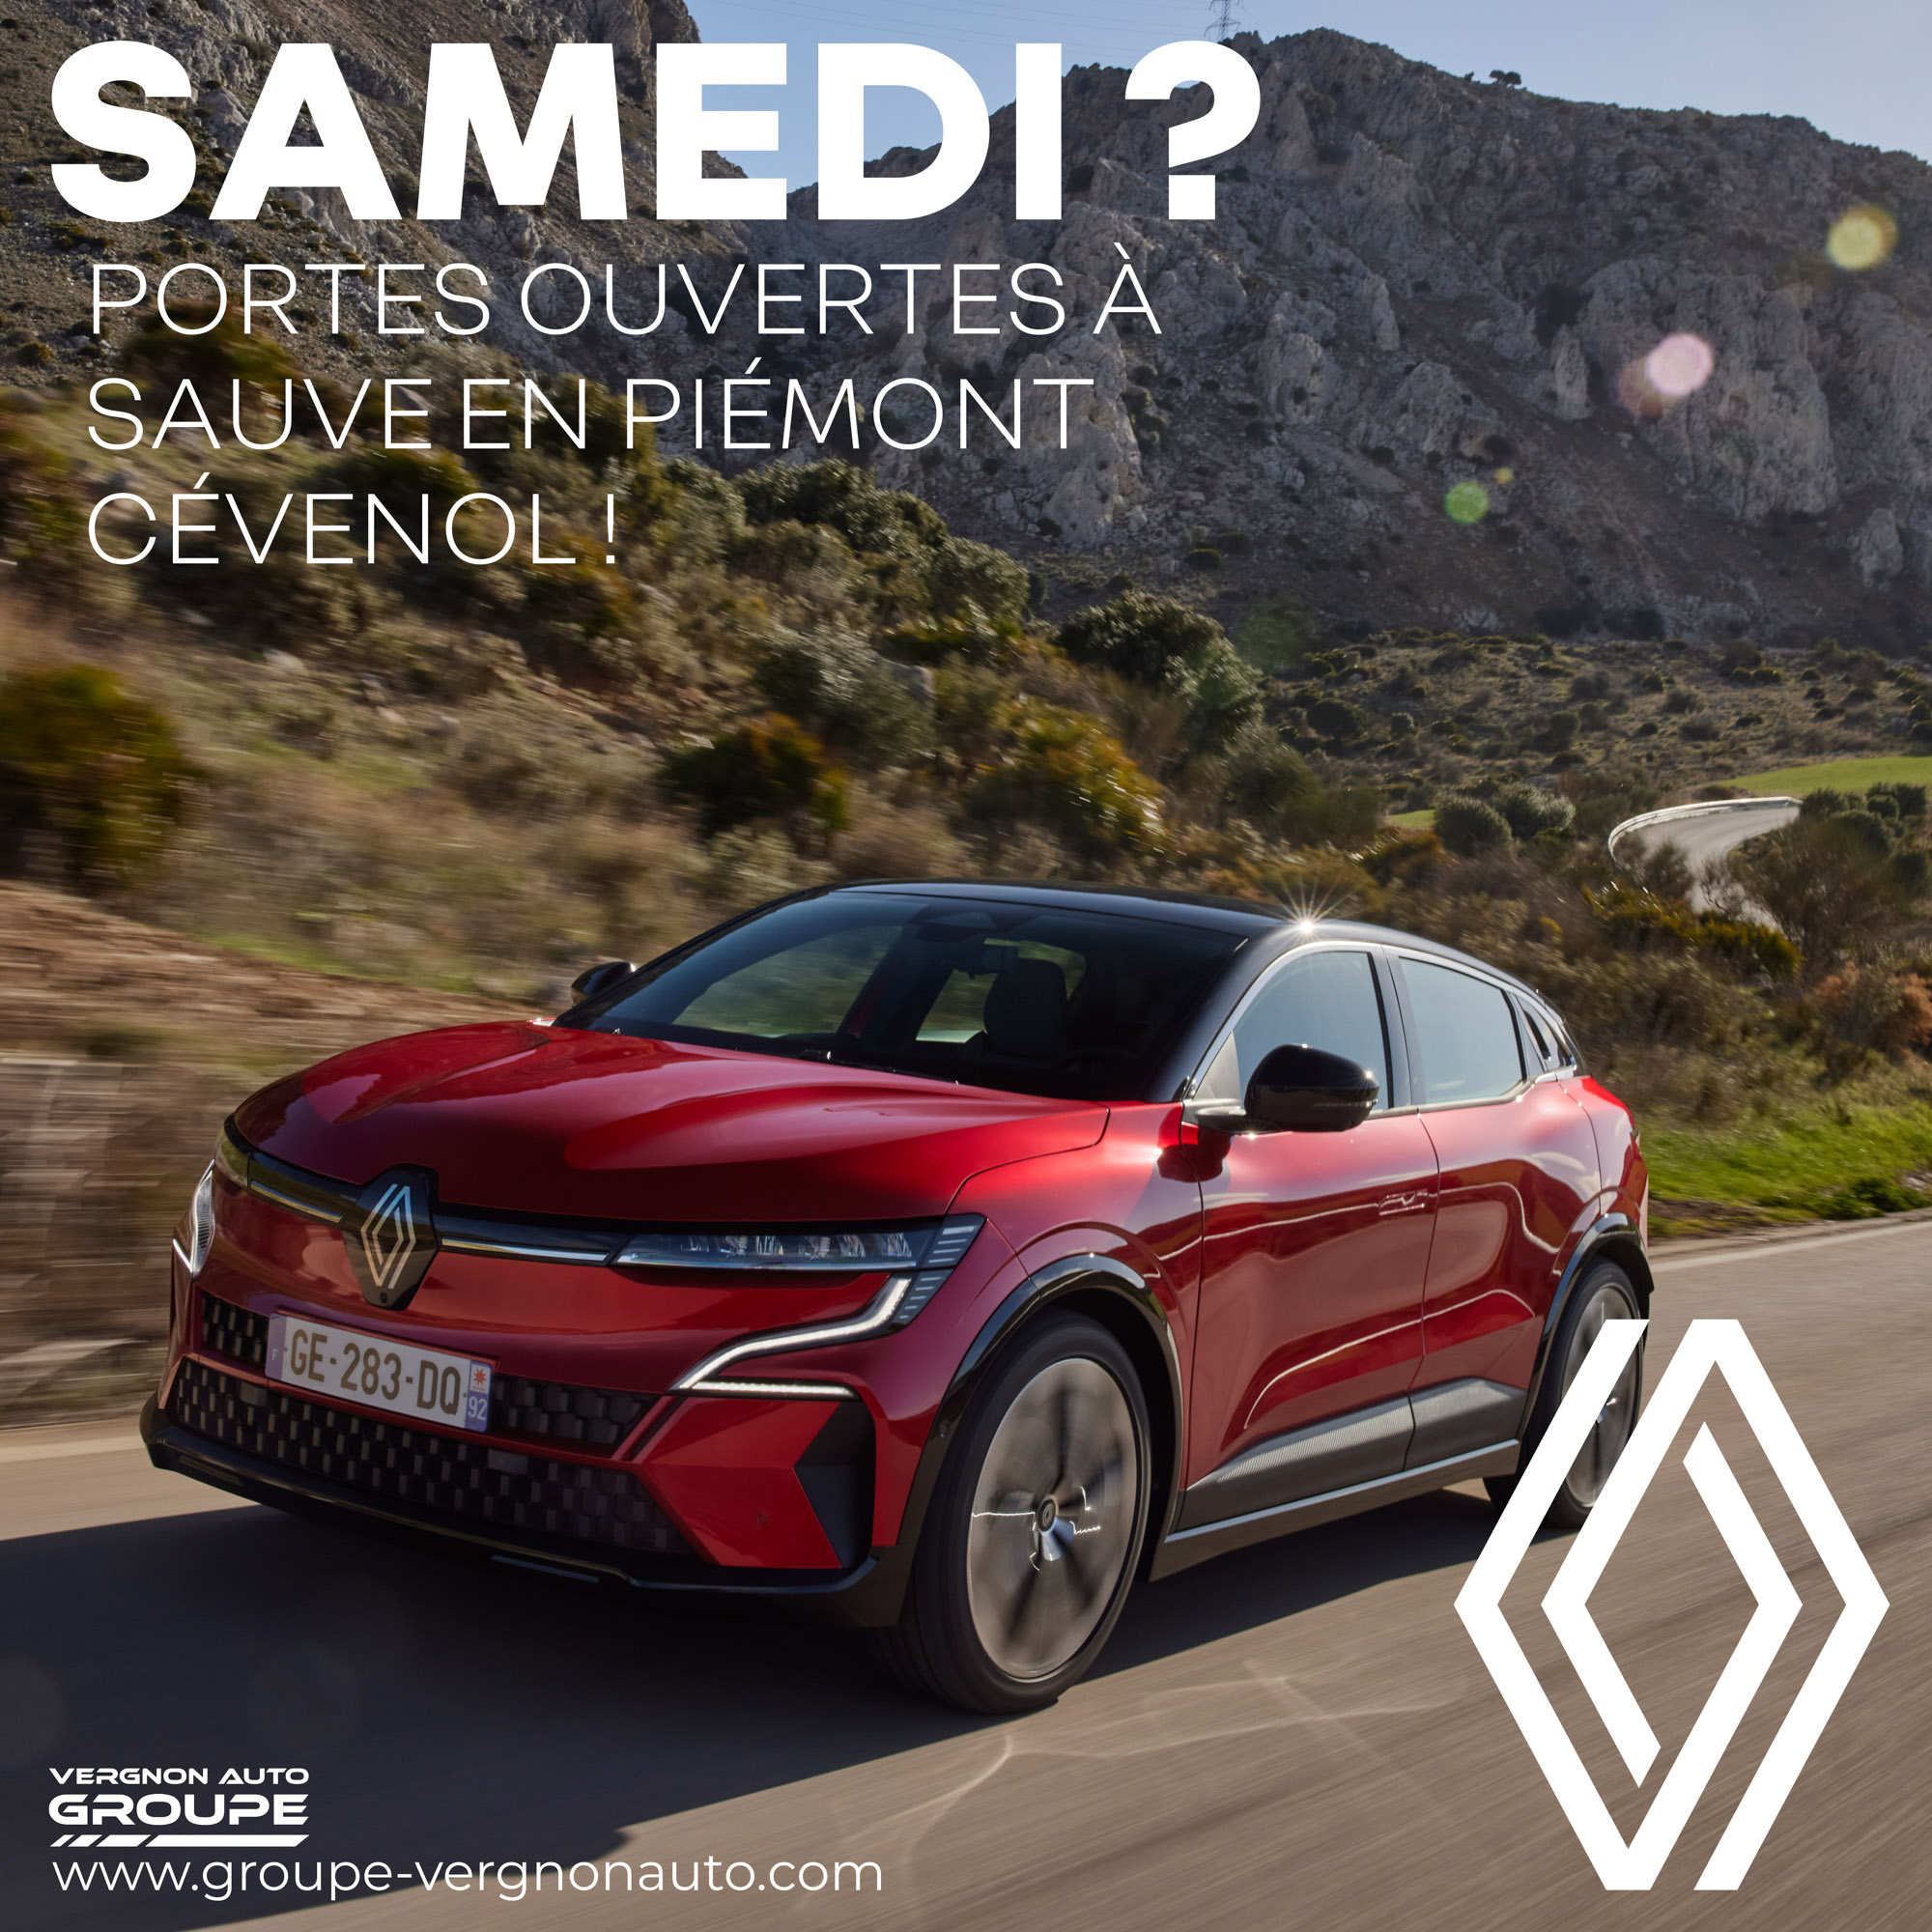 Samedi 12 mars ? C'est portes ouvertes Renault à Sauve, en Piémont cévenol, dans le Gard (30) !